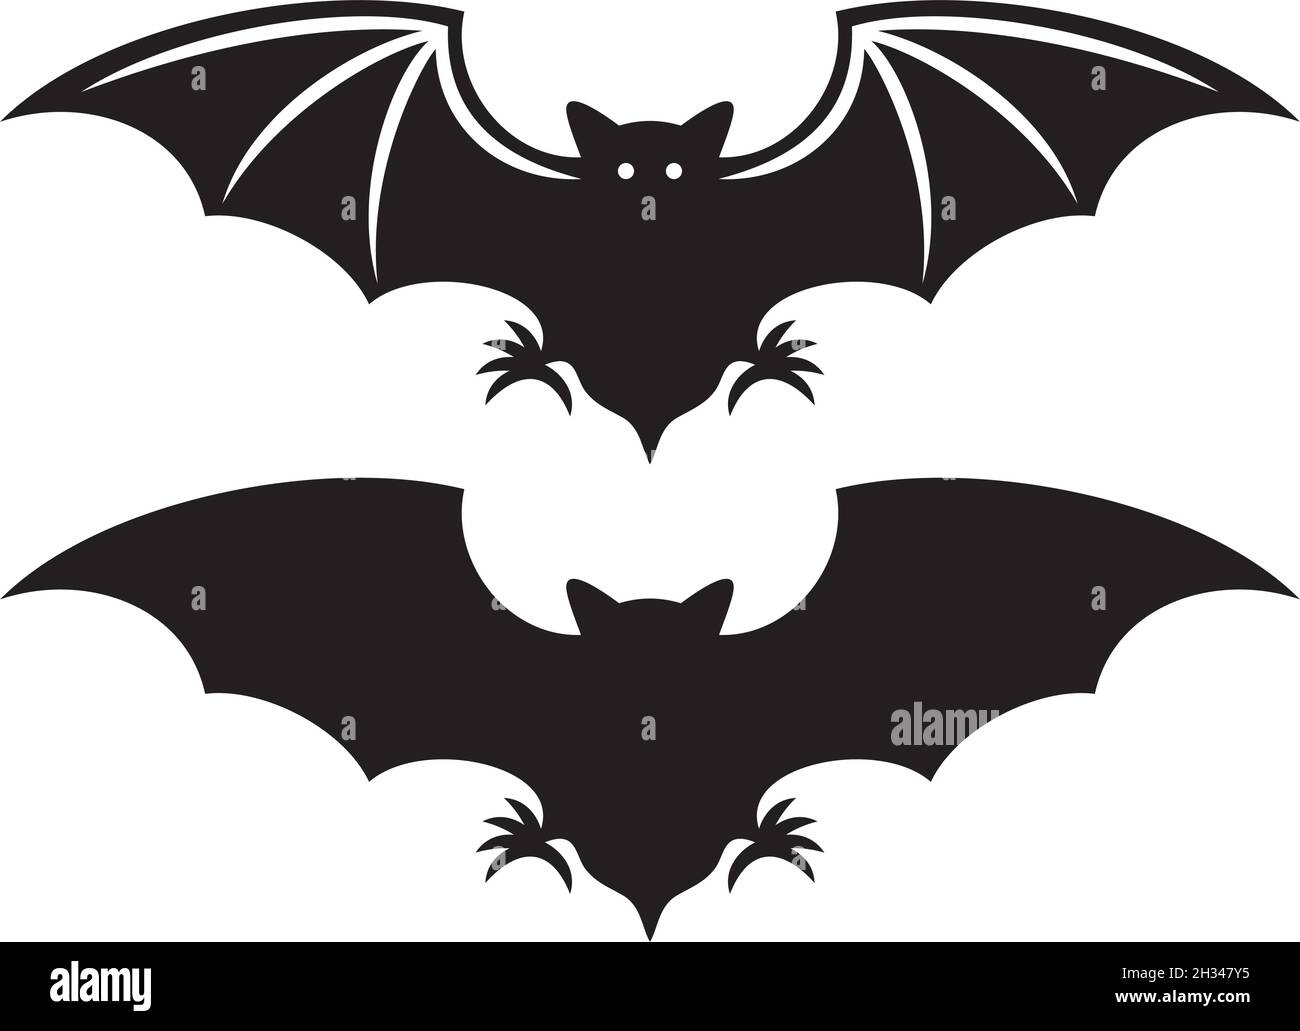 Flight of a bat silhouette vector illustration Stock Vector